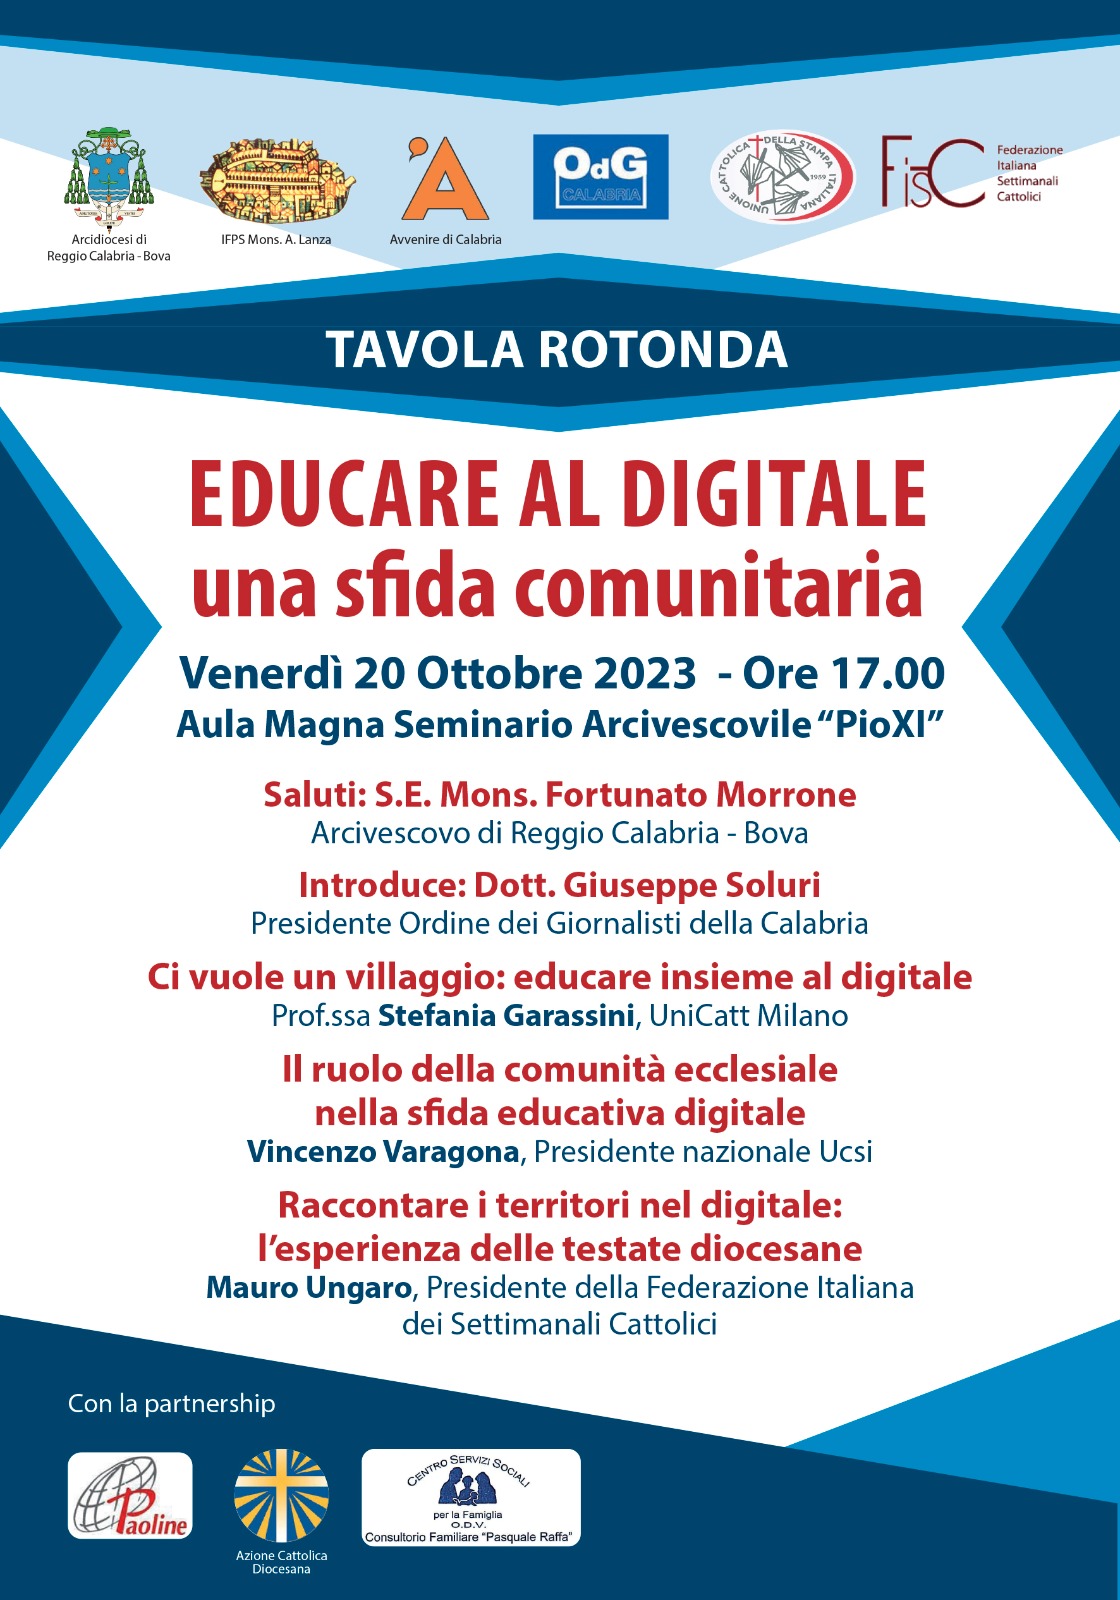 «Educare al digitale, una sfida comunitaria» – Tavola Rotonda Venerdì 20 Ottobre